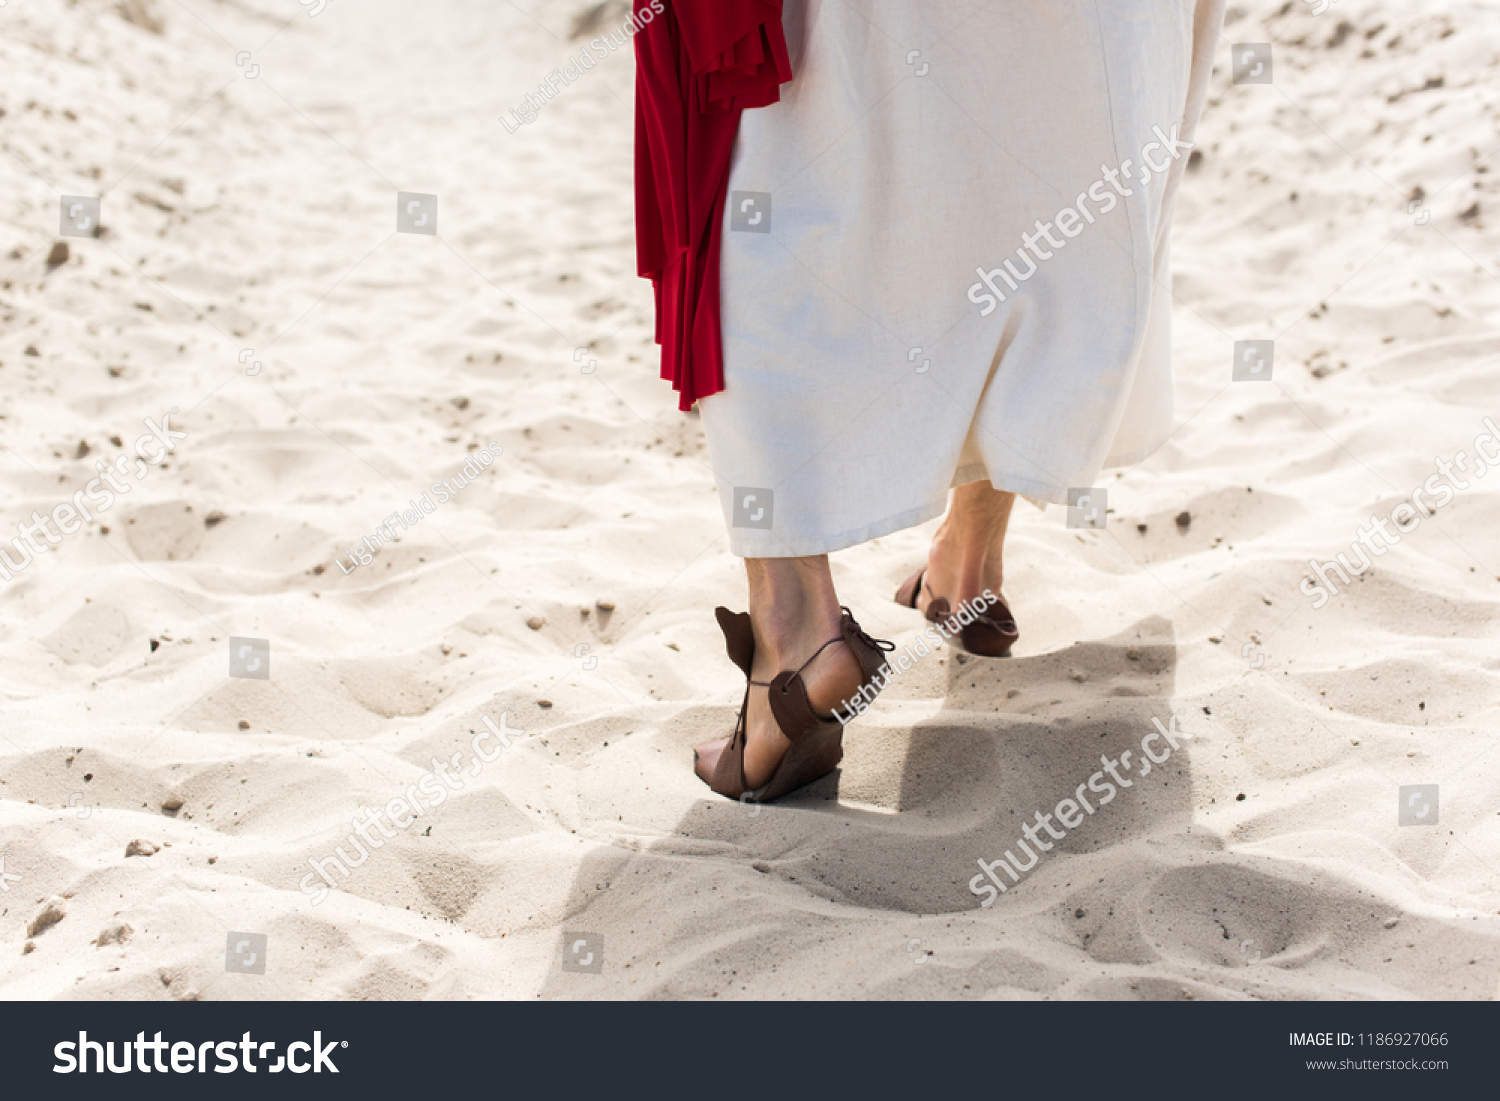 195 Jesus Sandals Images, Stock Photos & Vectors | Shutterstock